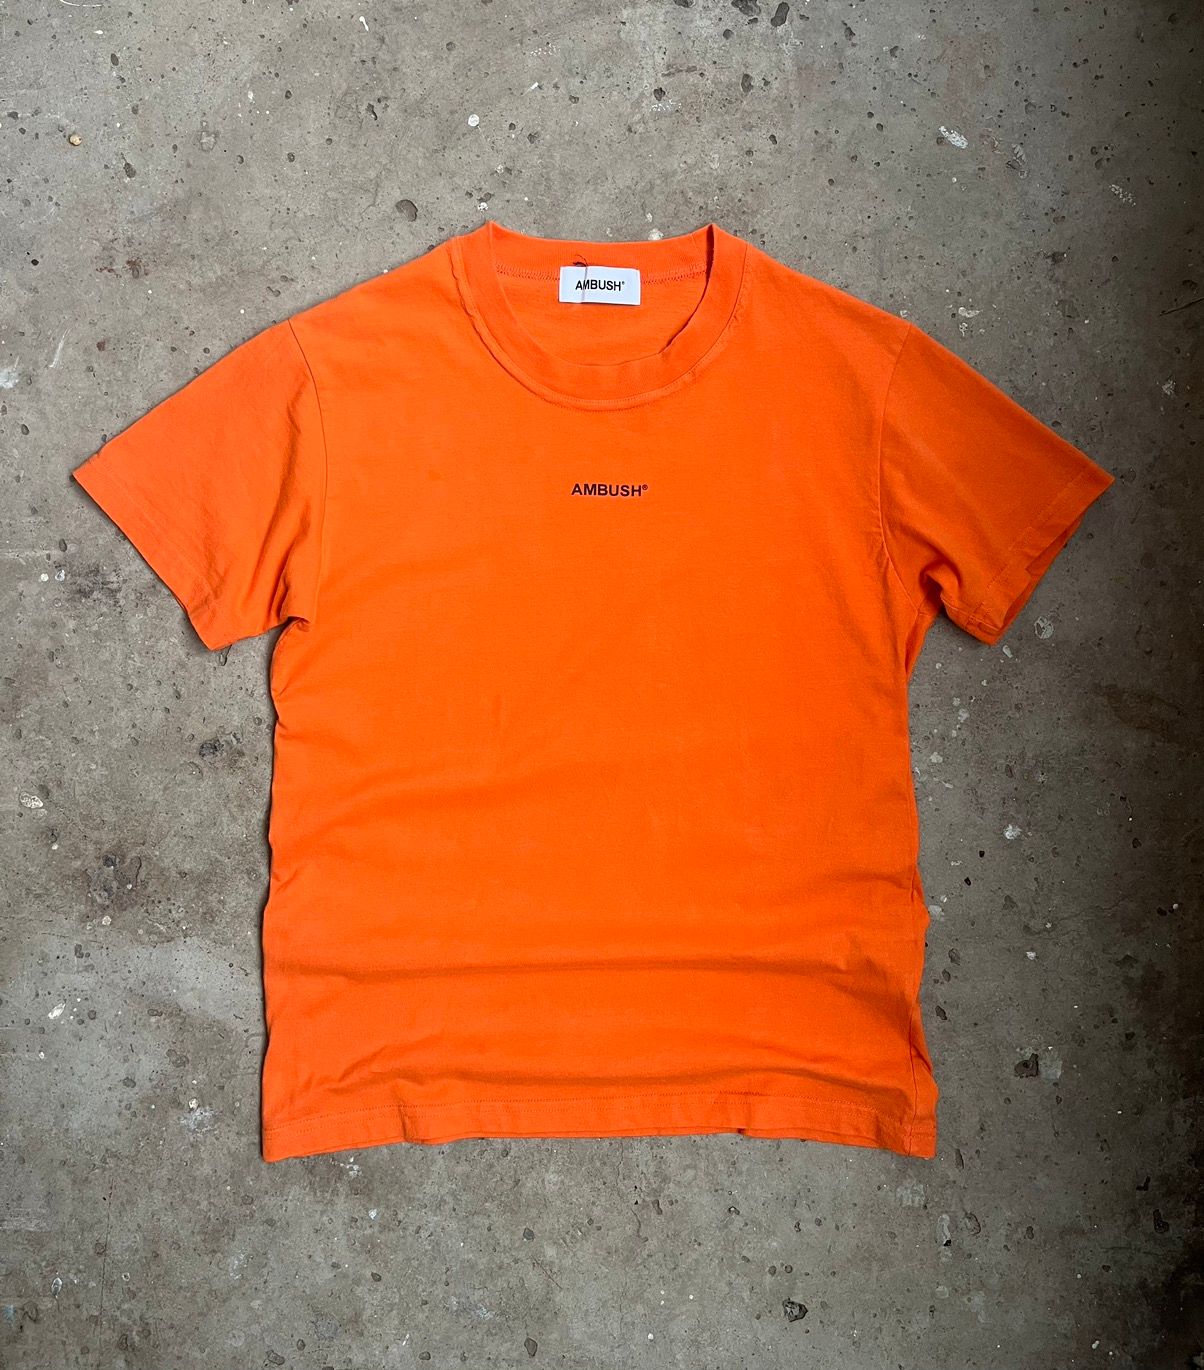 Ambush Design Ambush Classic XL Logo Orange T-Shirt | Grailed